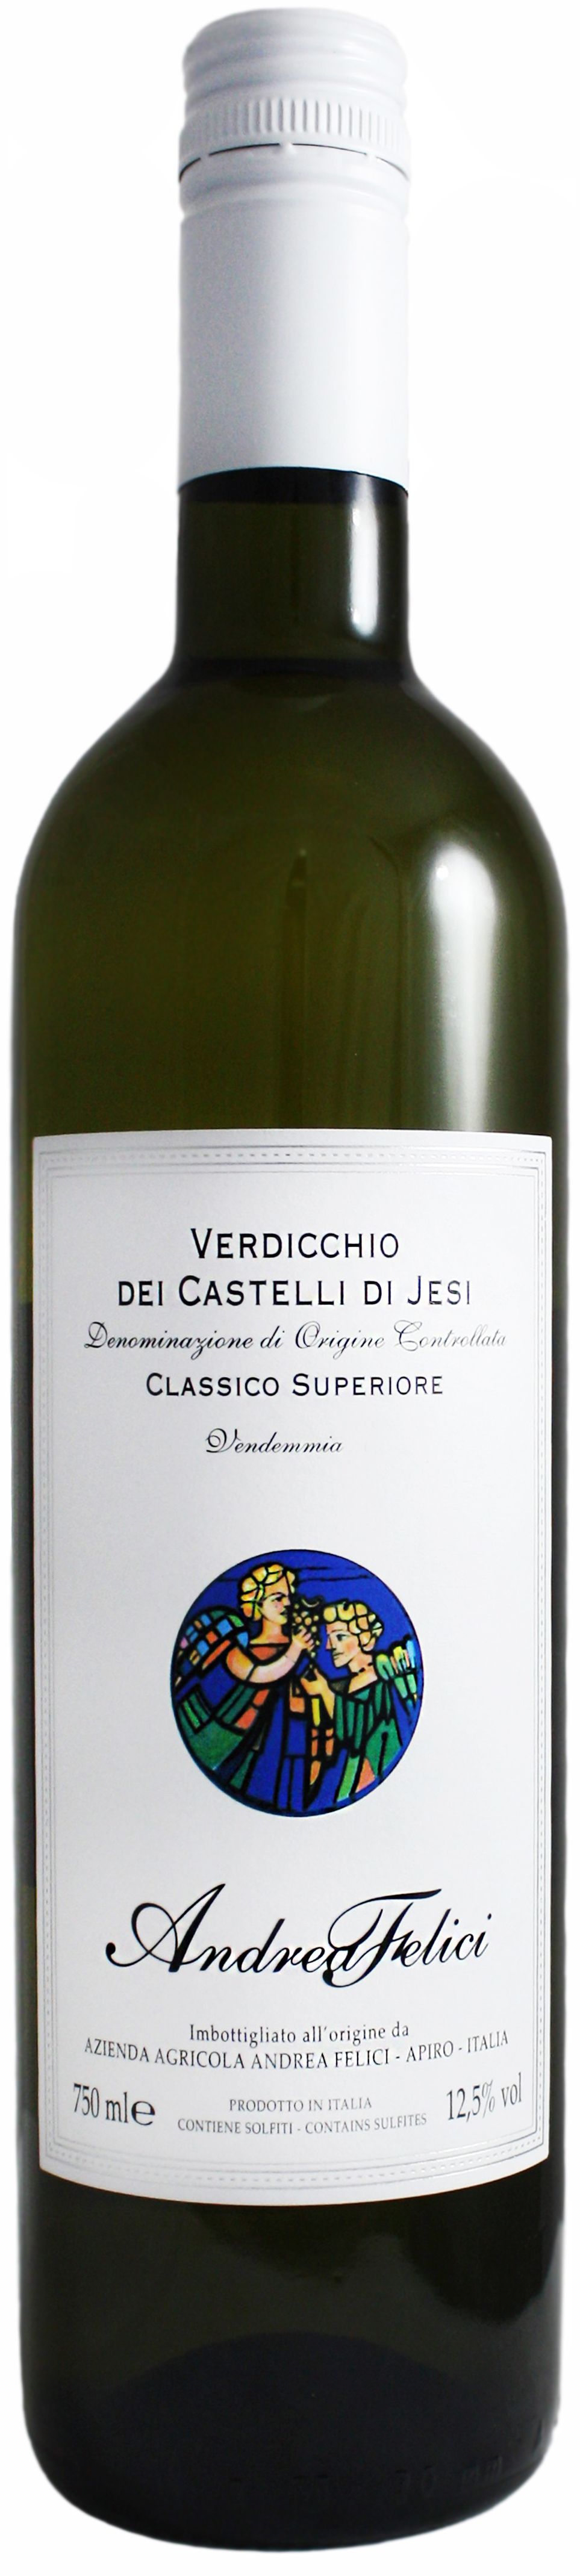 Andrea Felici, Verdicchio Dei Castelli Di Jesi Classico Superiore, 2017